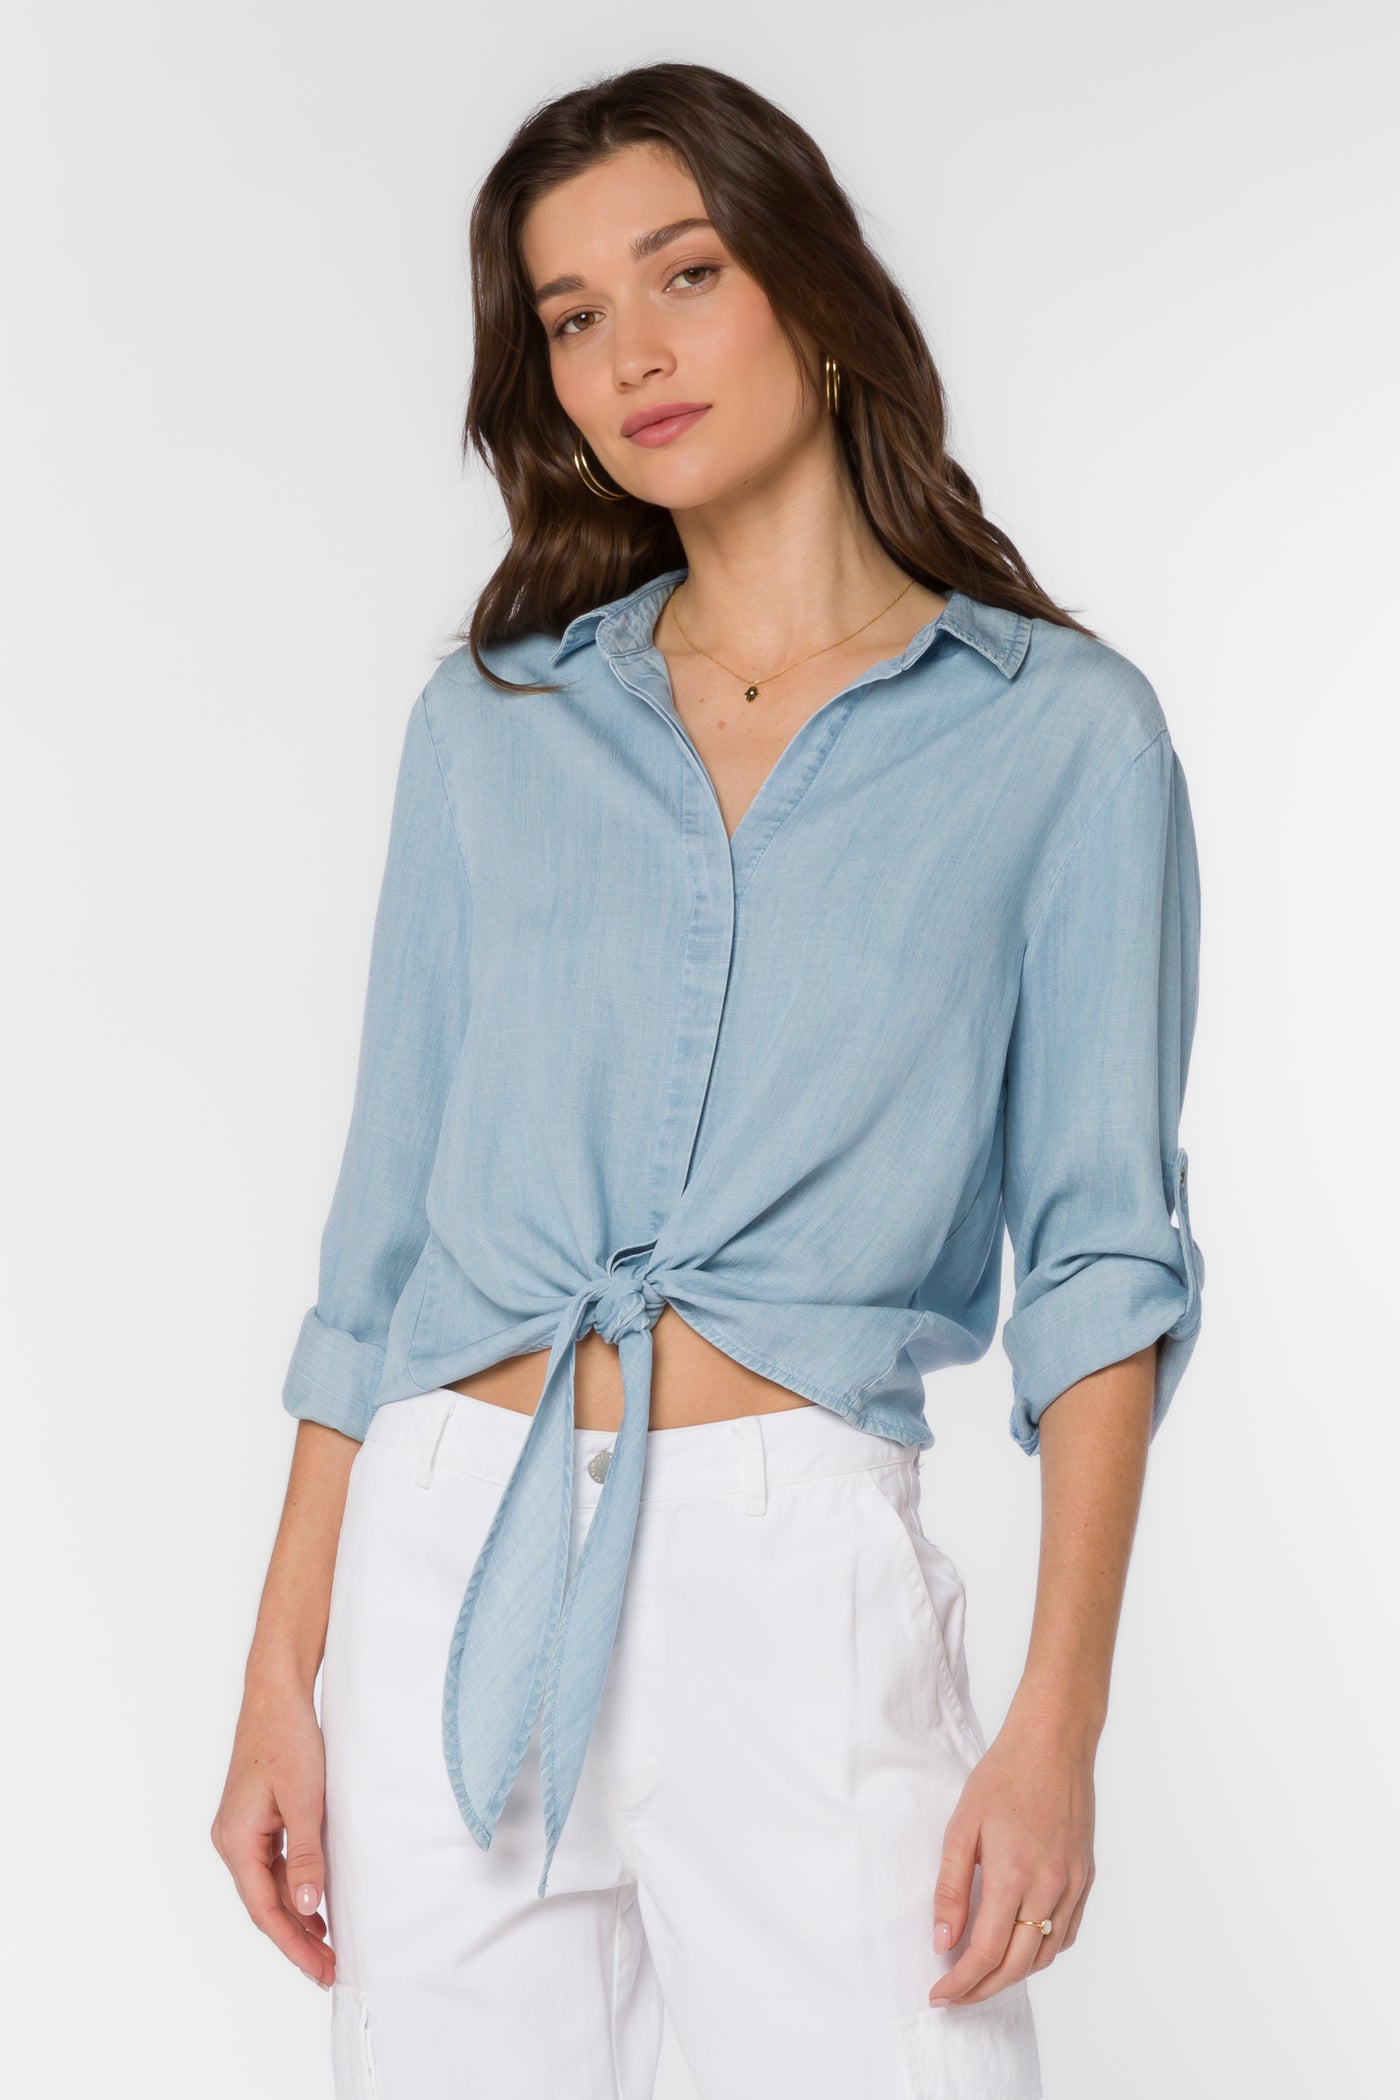 Solange Sky Blue Shirt - Tops - Velvet Heart Clothing